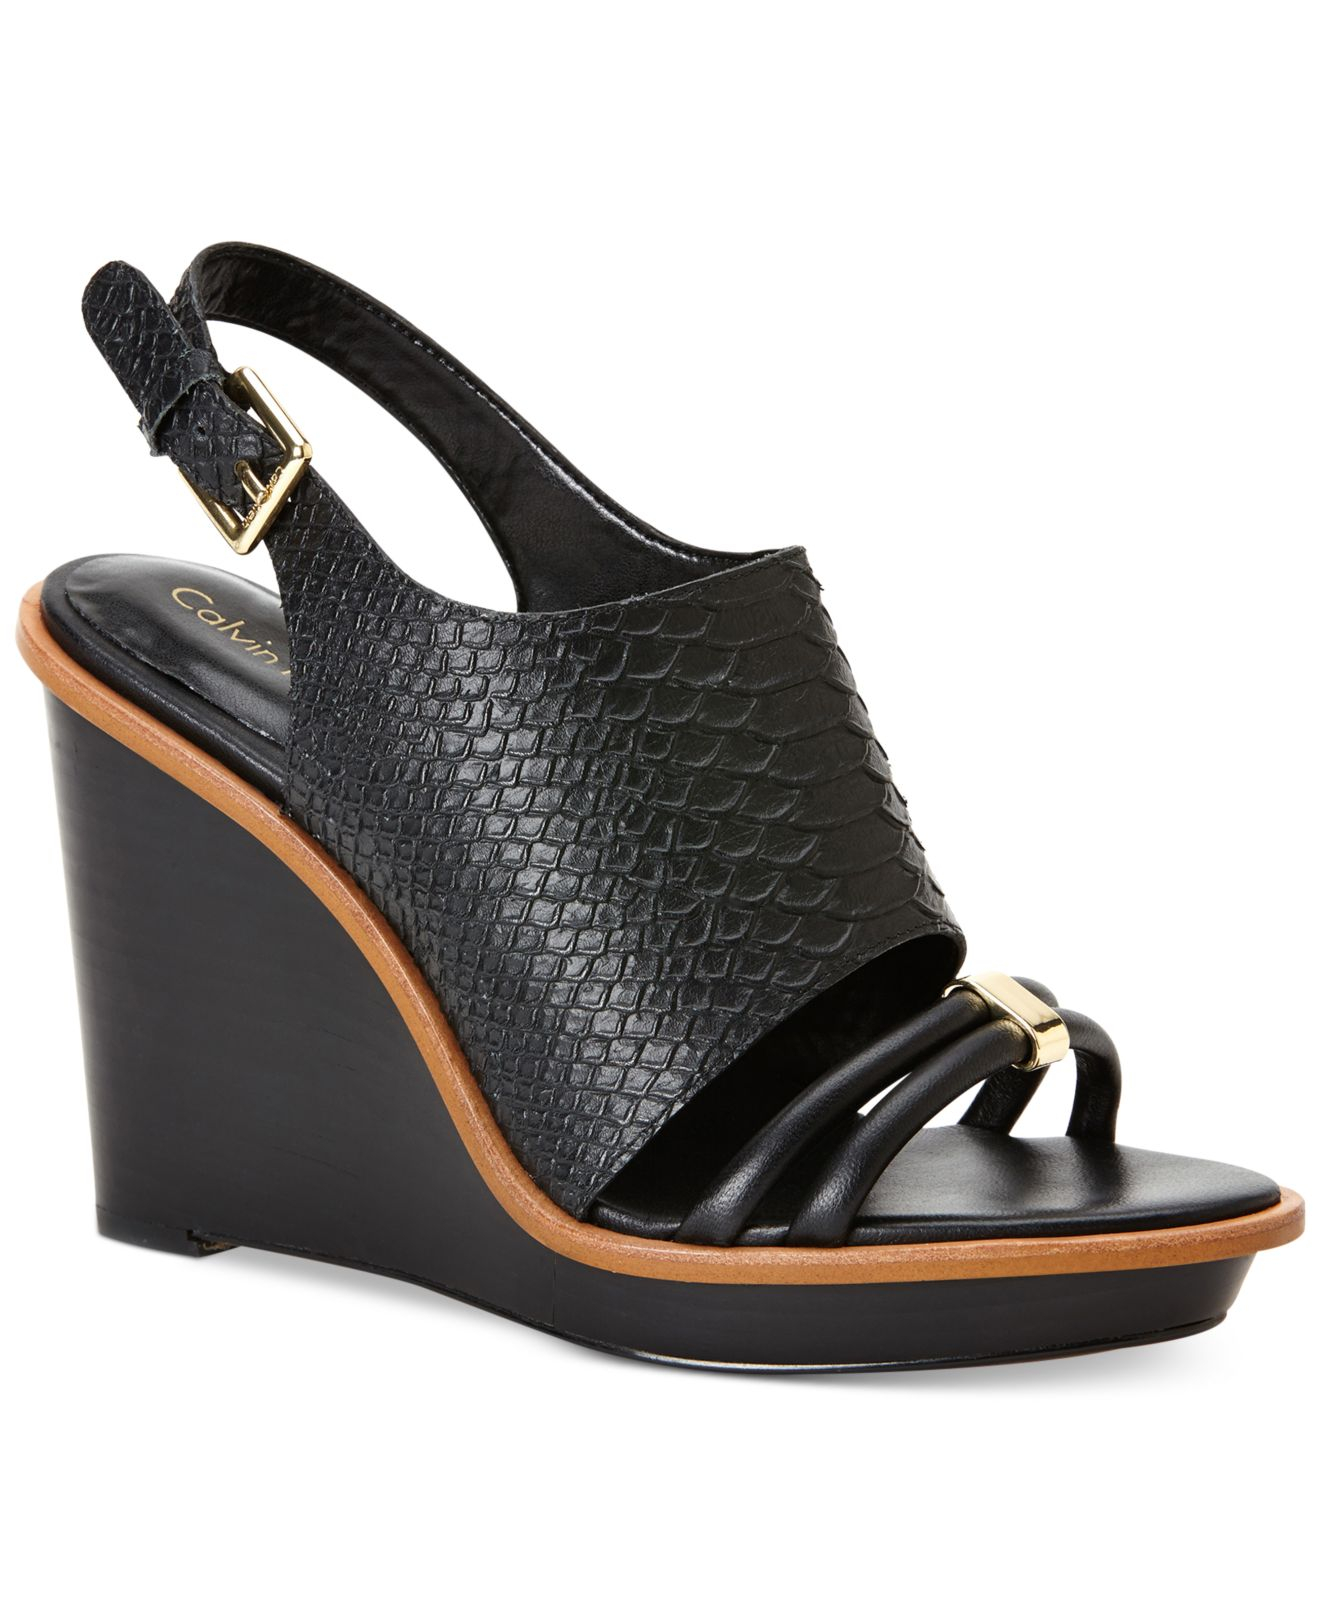 Lyst - Calvin Klein Women'S Prina Platform Wedge Sandals in Black